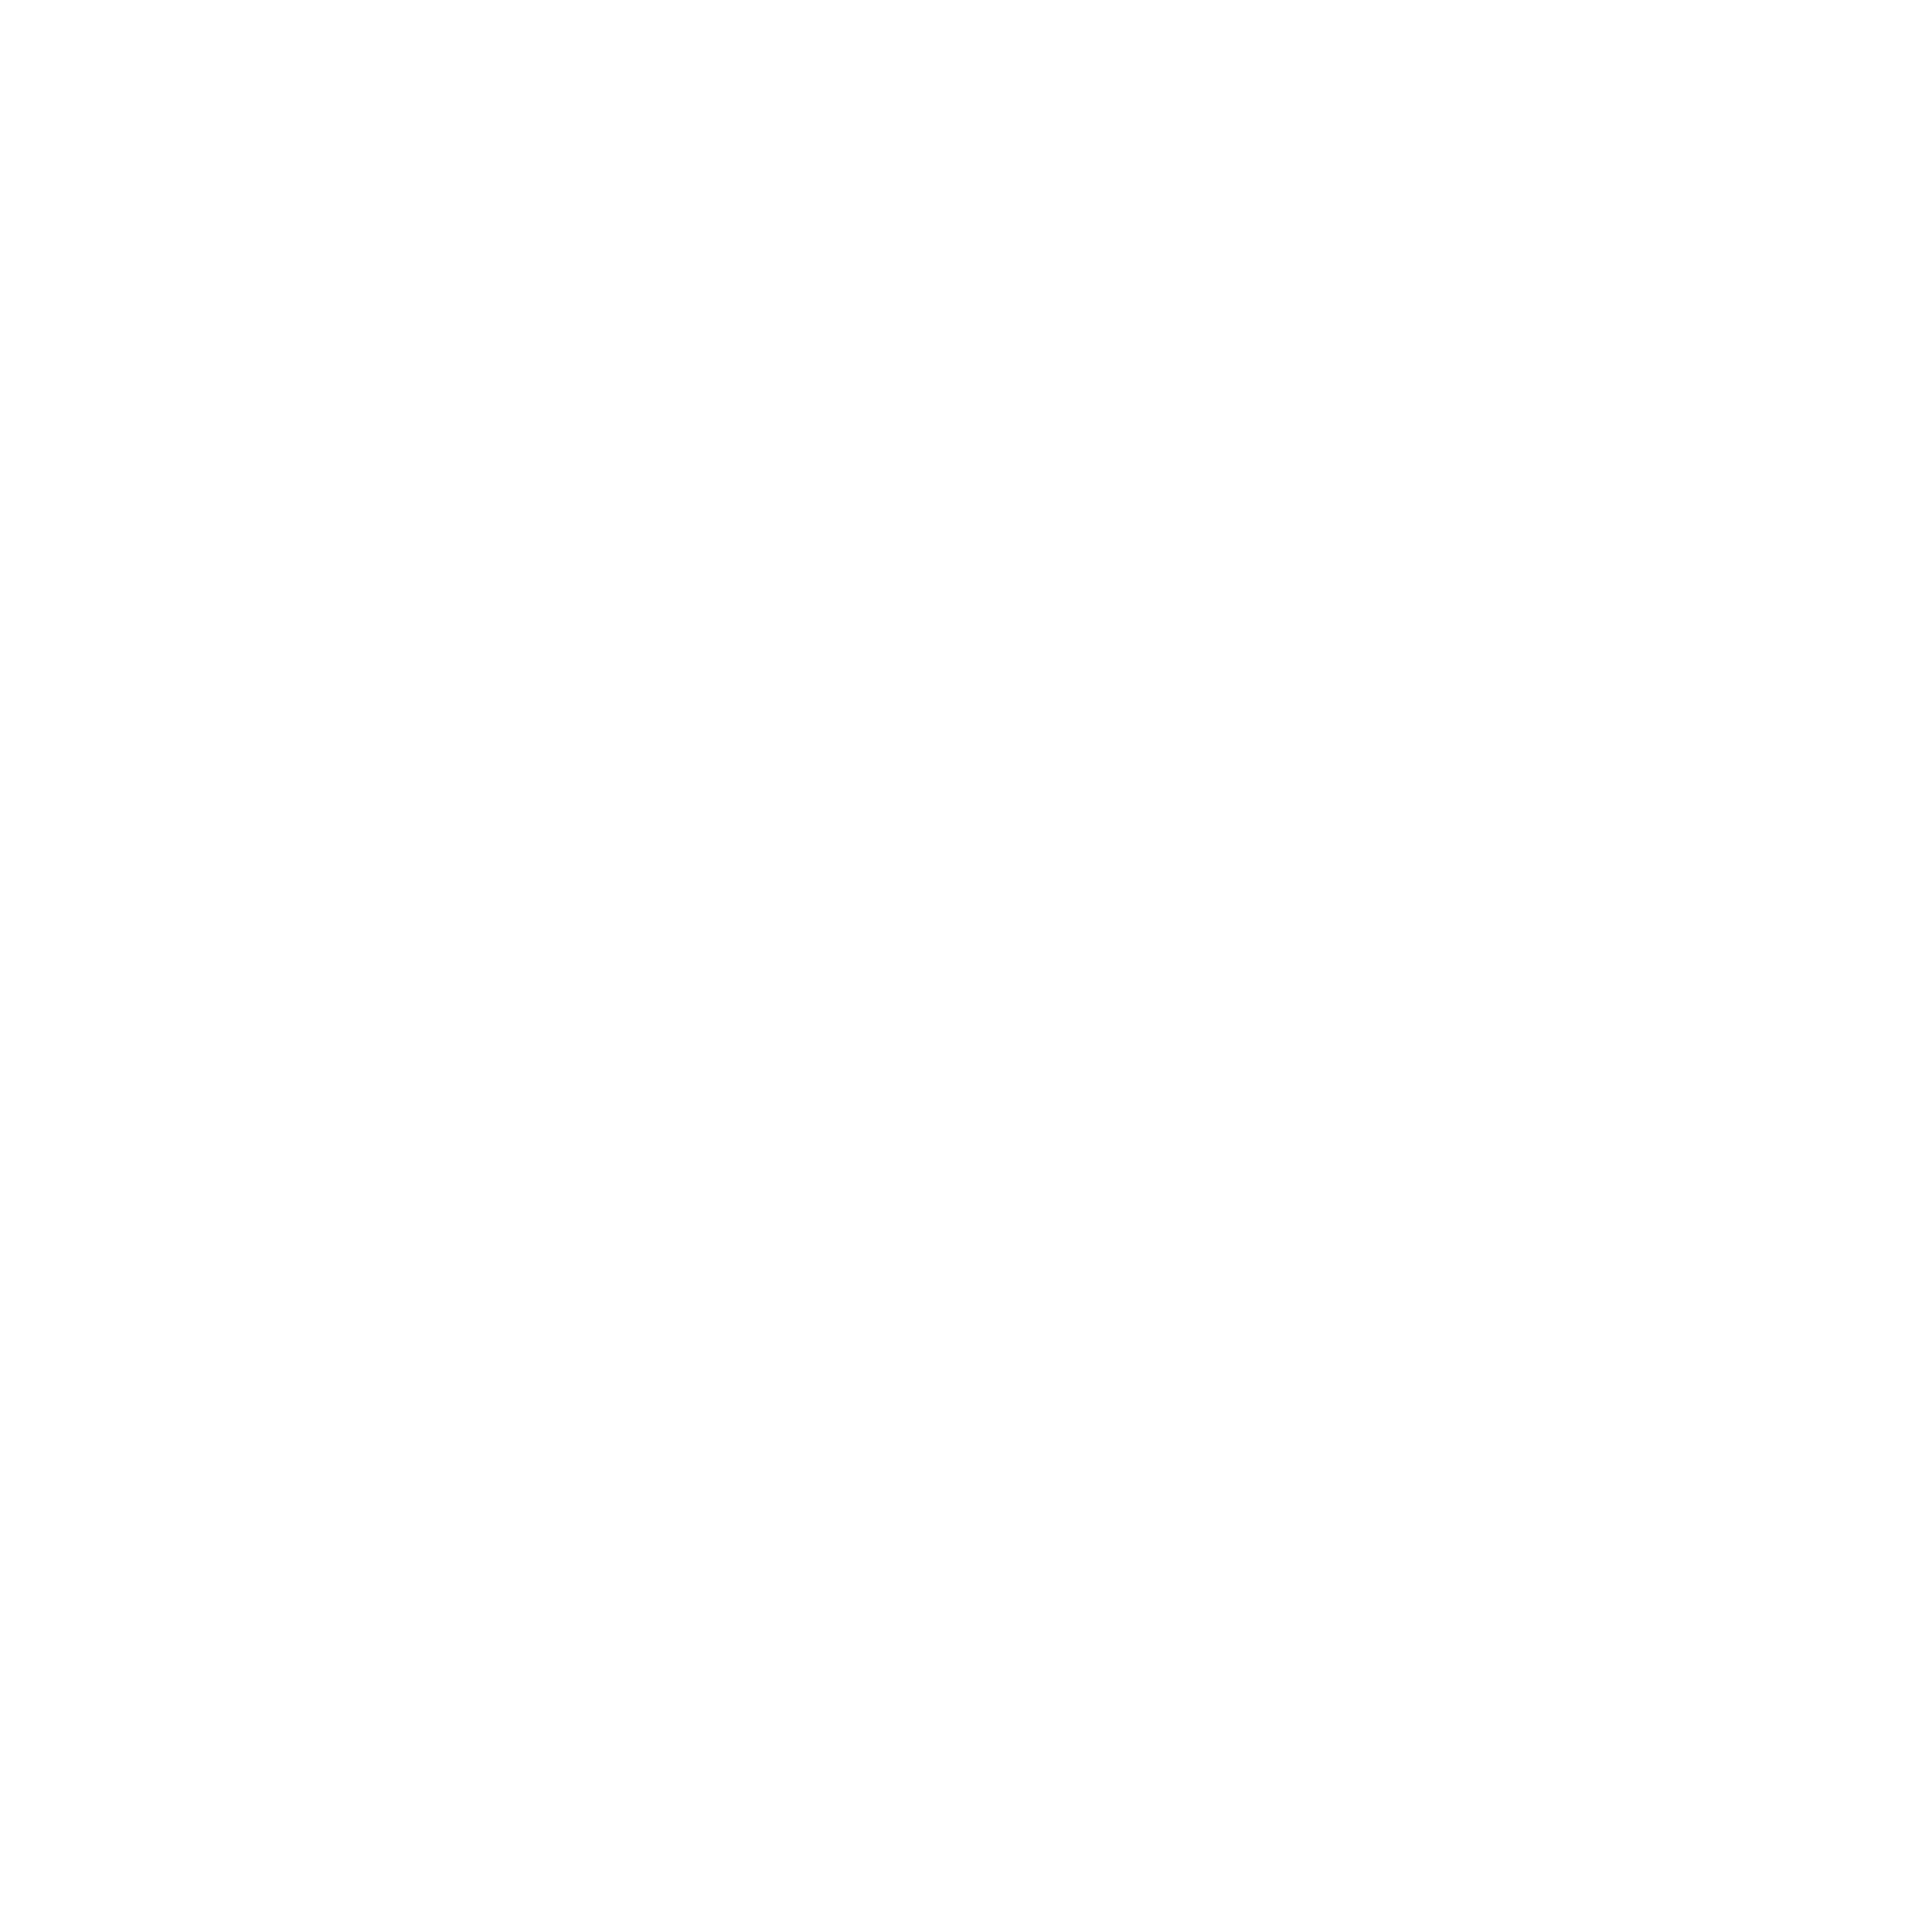 Jack Jones Racing